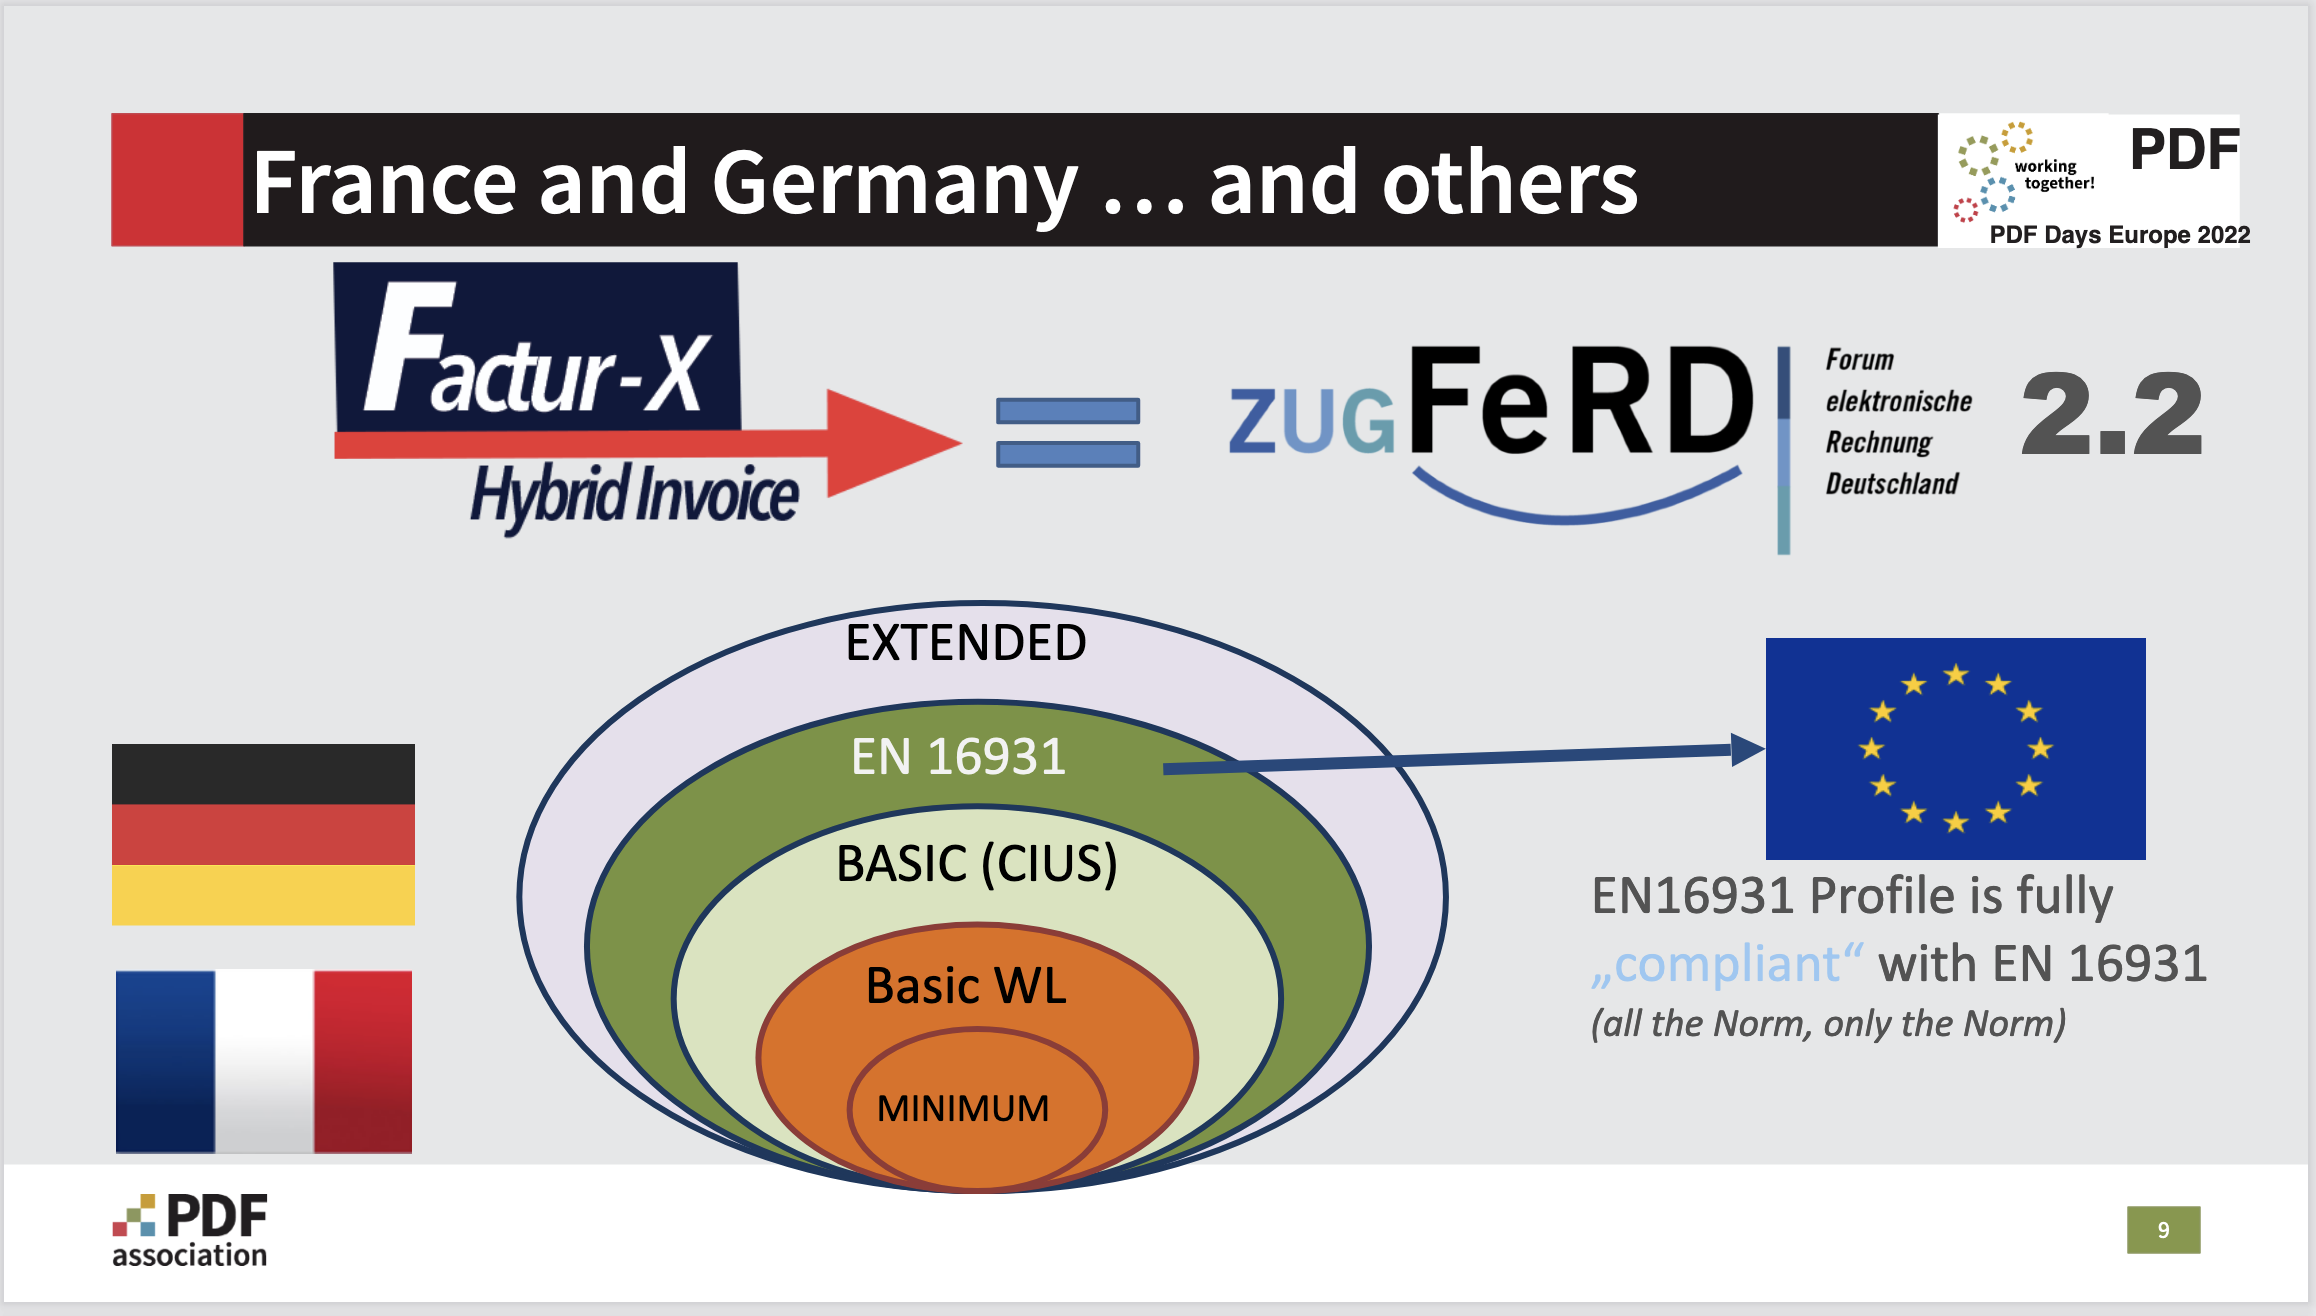 Källa: PDF Association, Format för elektroniska fakturor / Hybridfakturor, Nu är ZUGFeRD = Factur-X - Bild